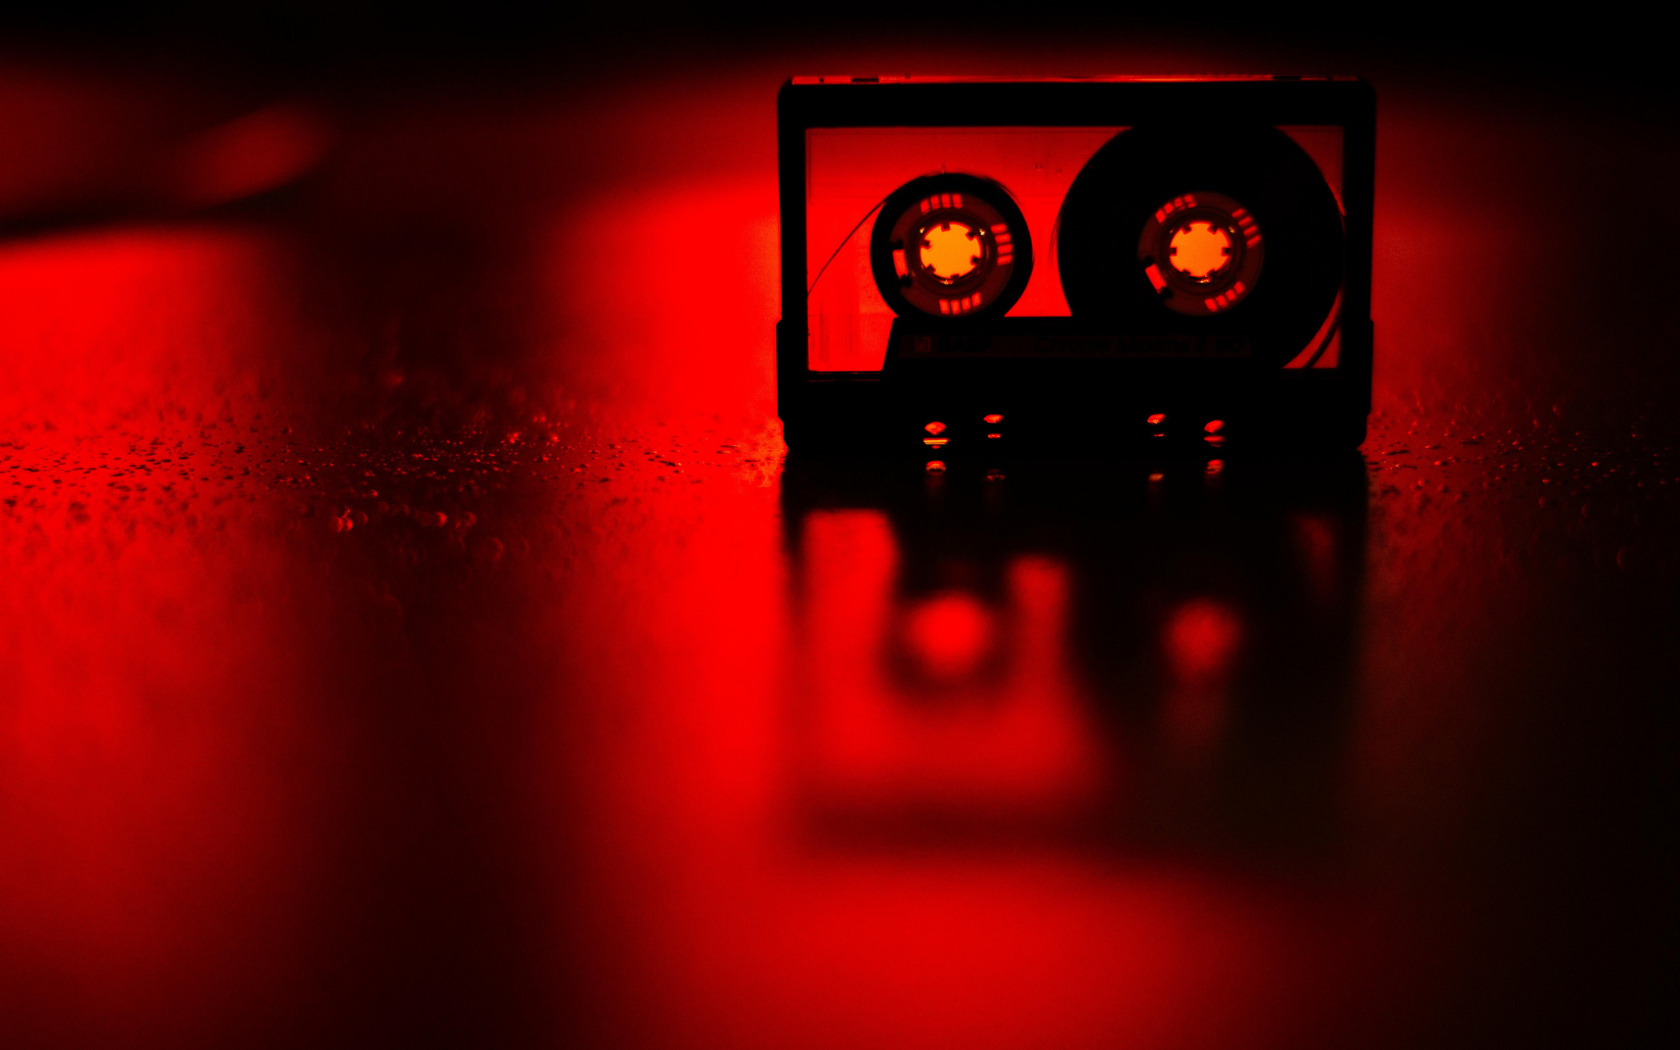 Заставка кассета. Аудиокассета на черном фоне. Красная кассета. Музыкальный рабочий стол. Красная музыка без слов